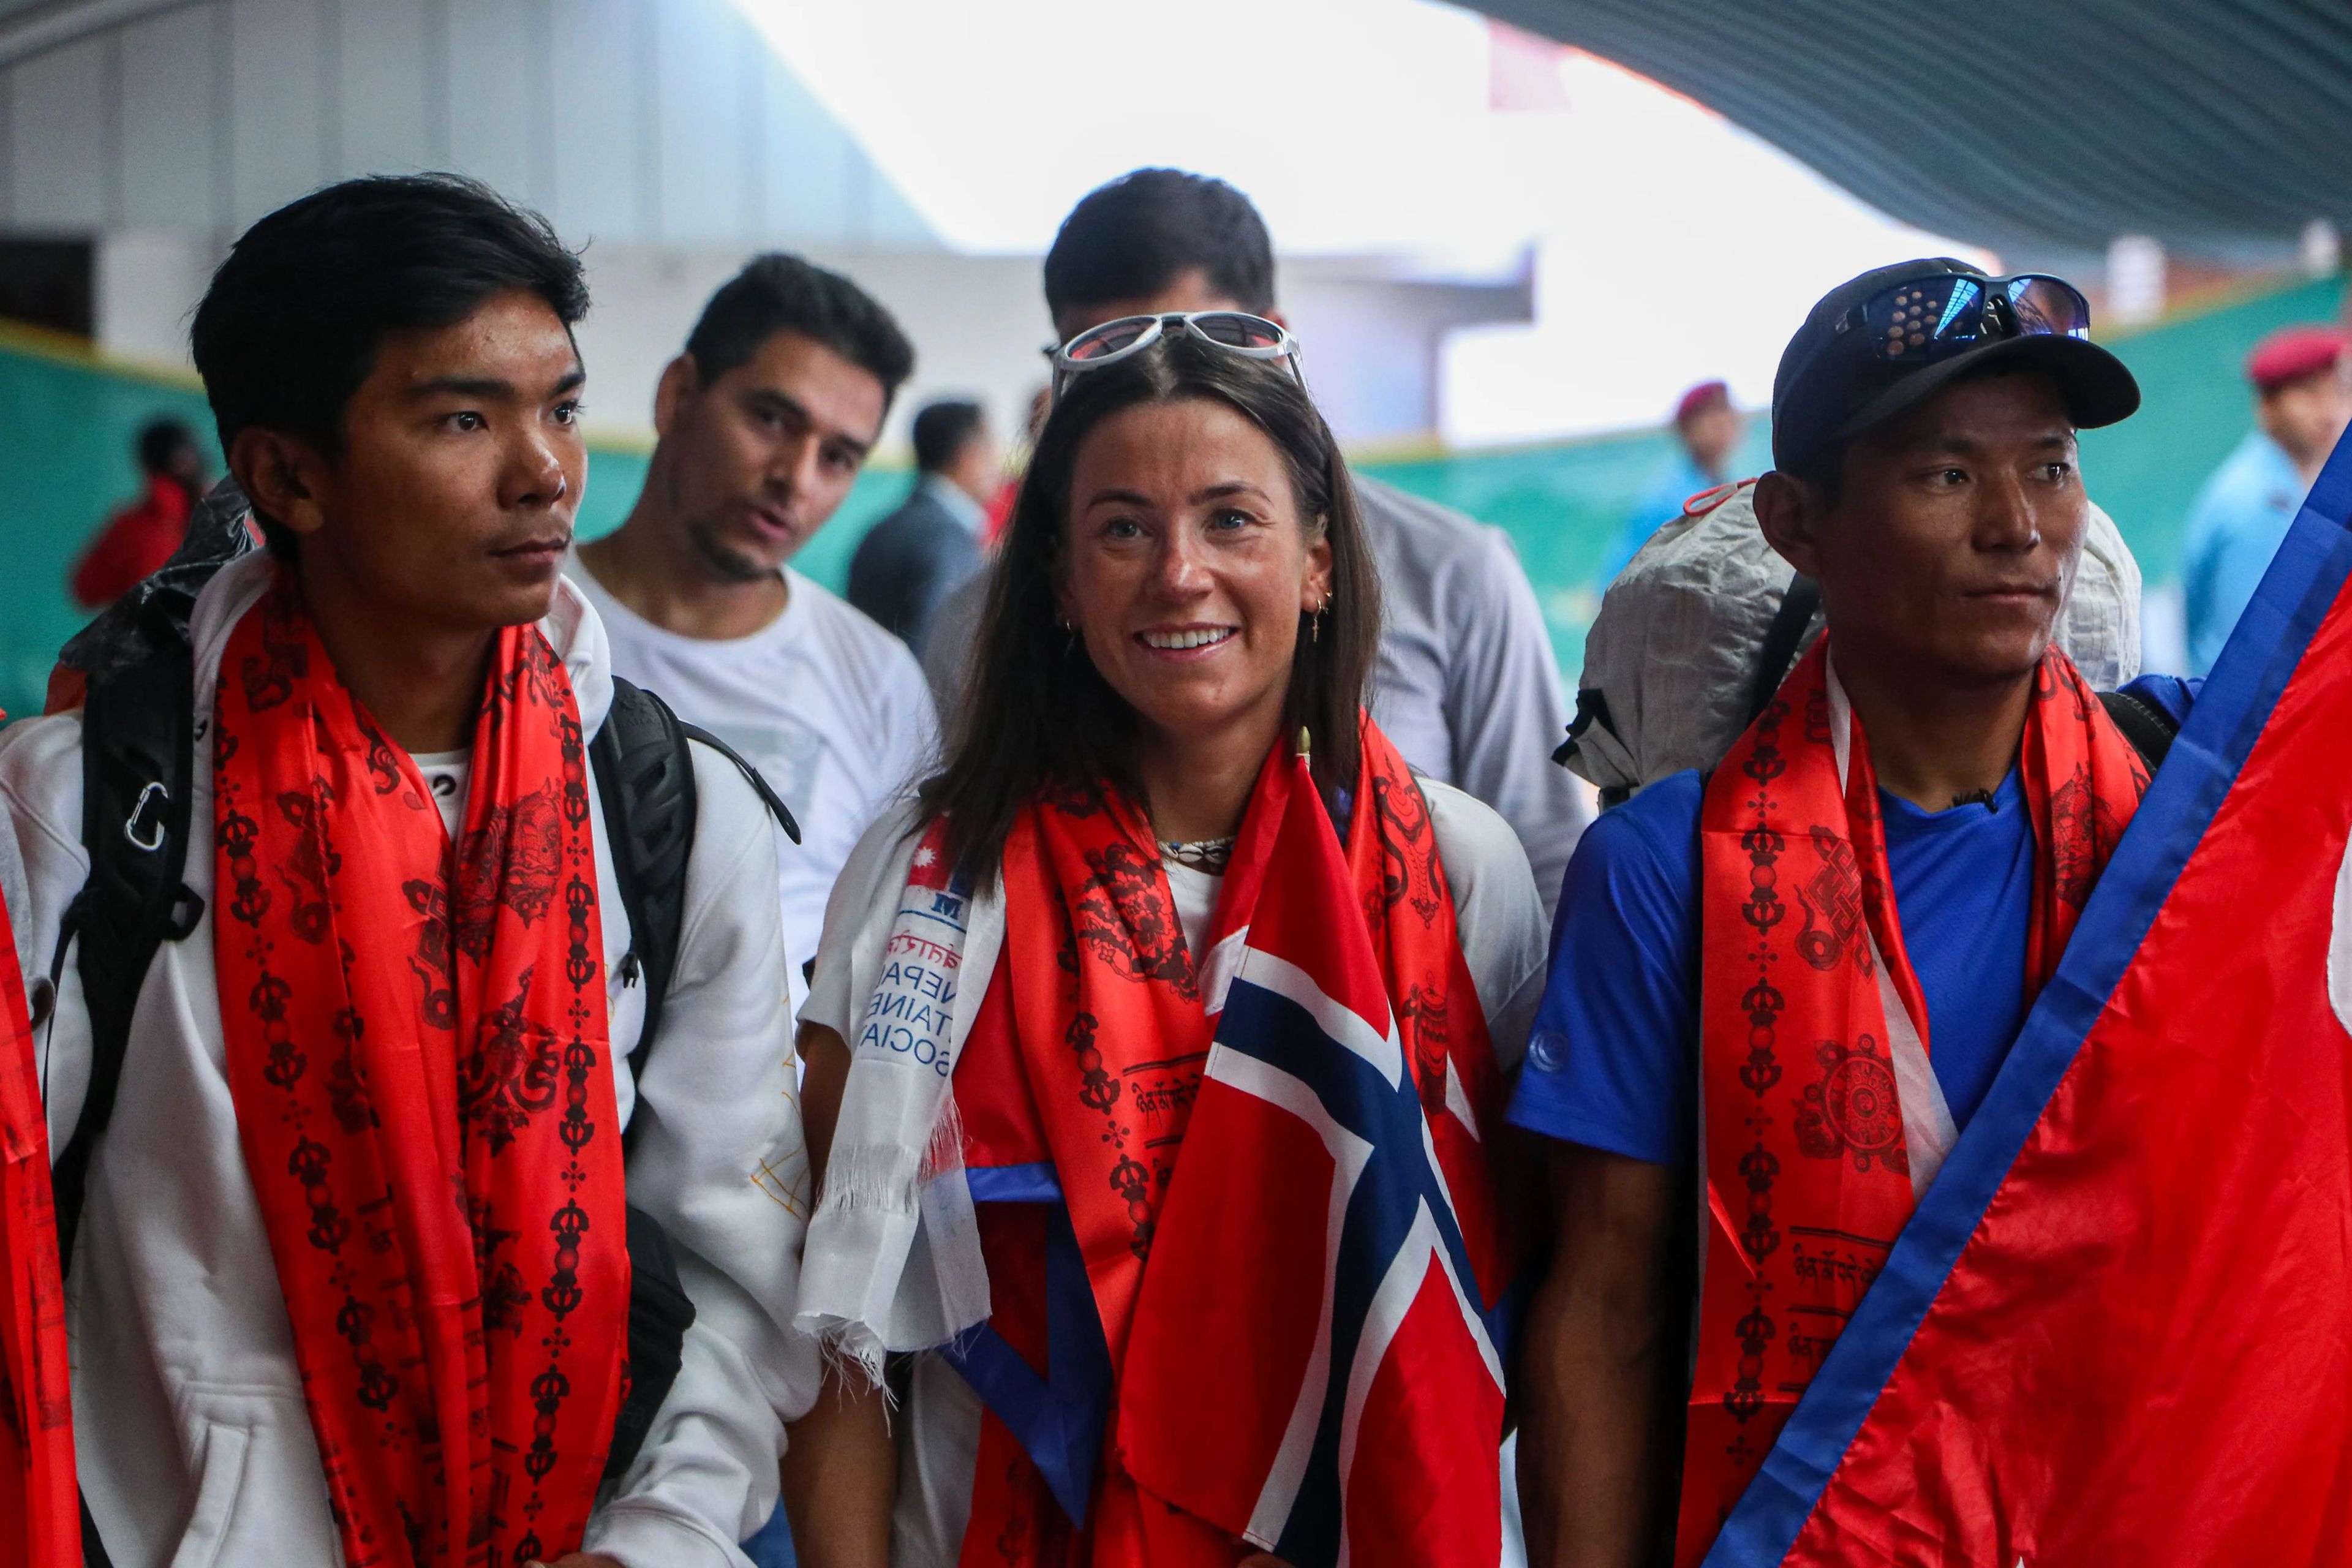 Kristin Harila y Tenjen Sherpa establecieron el récord de la cumbre más rápida de los 14 picos de 8.000 metros del mundo. Junto a ellos está Nima Rinji Sherpa, que está batiendo récords como el alpinista más joven en hacer cumbre en ochomiles.